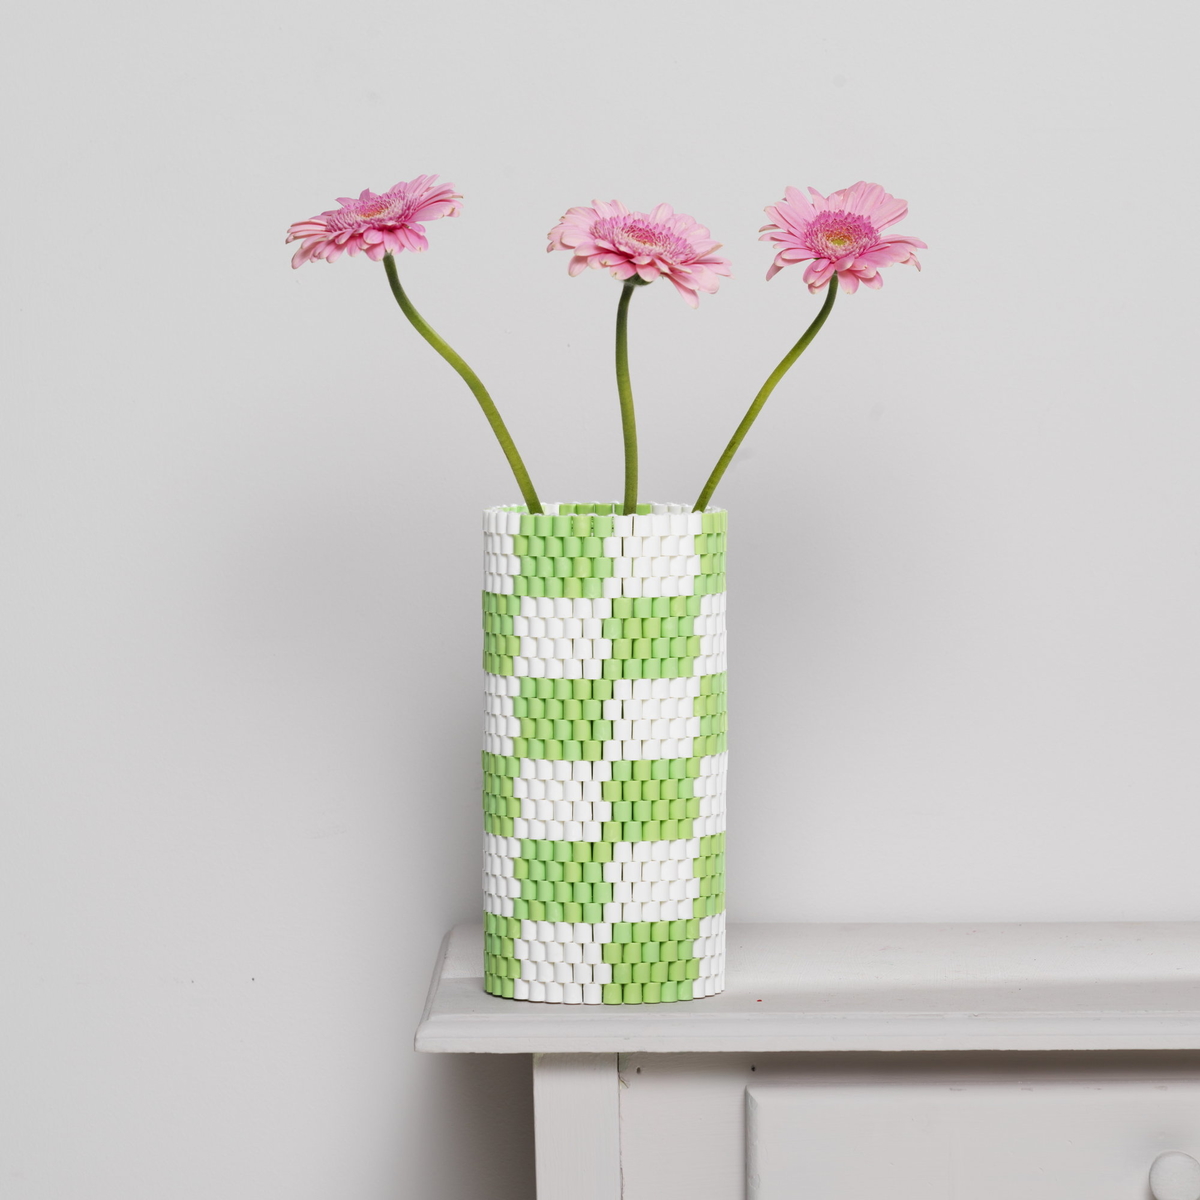 Vev med rørperler – gjør om en vase